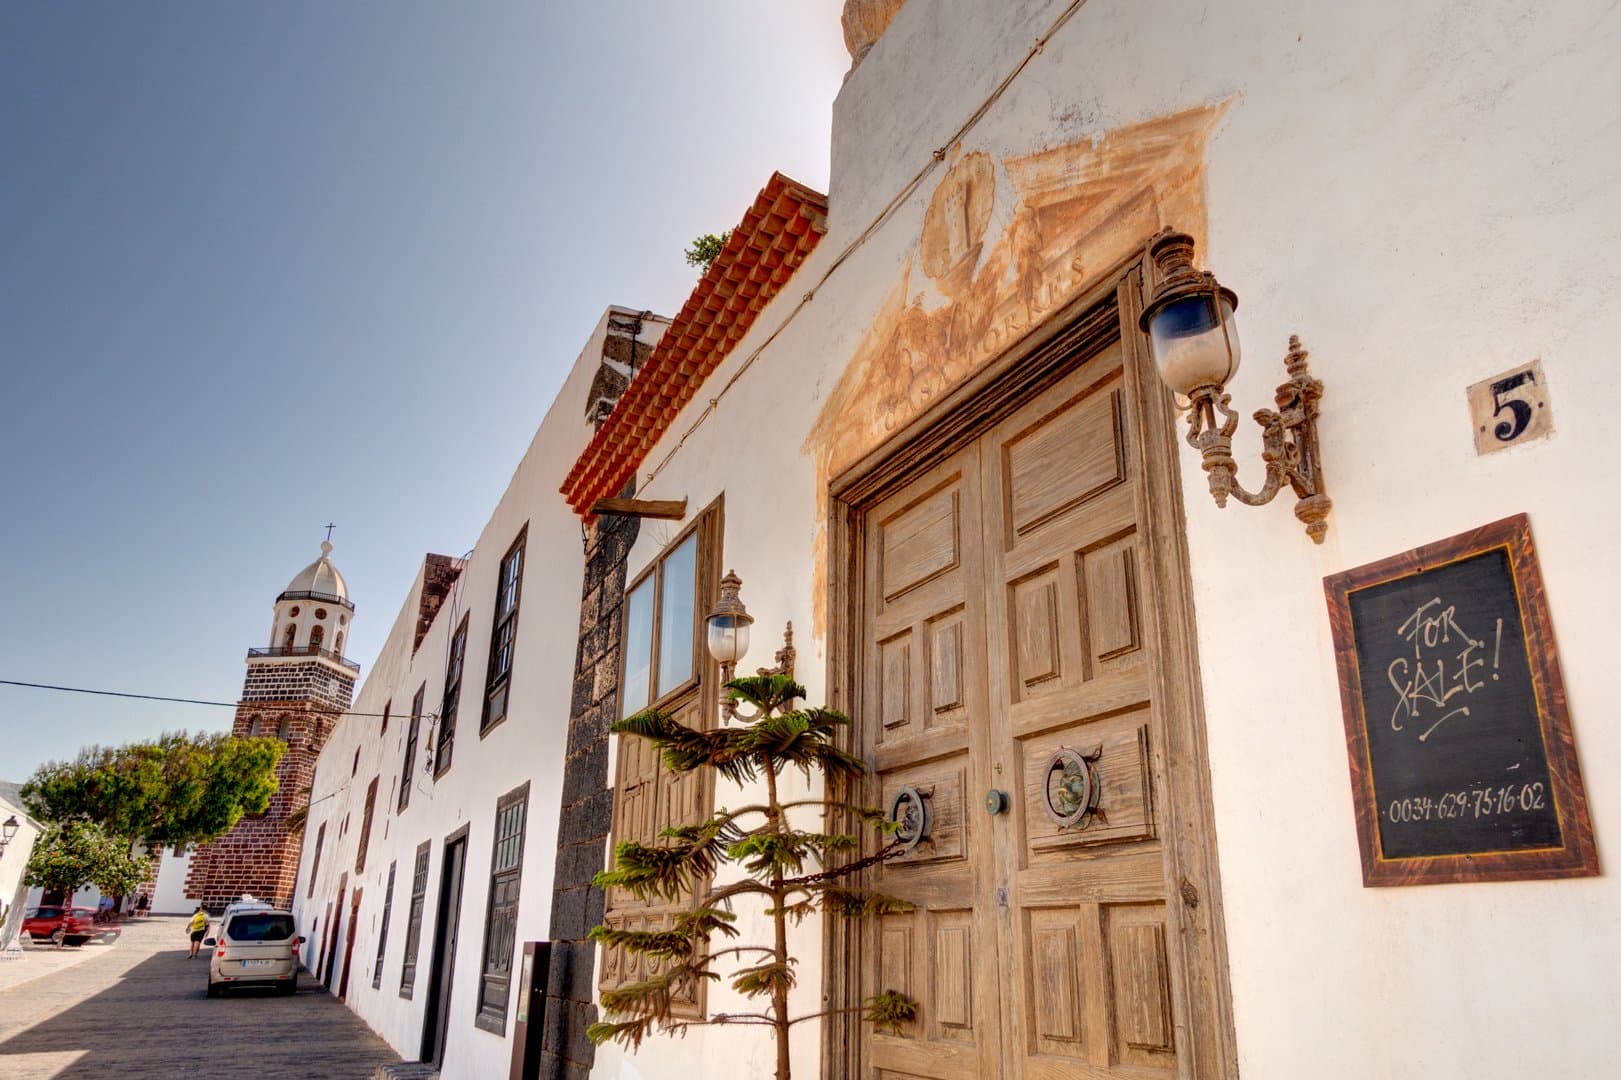 Free Teguise Tour Lanzarote5